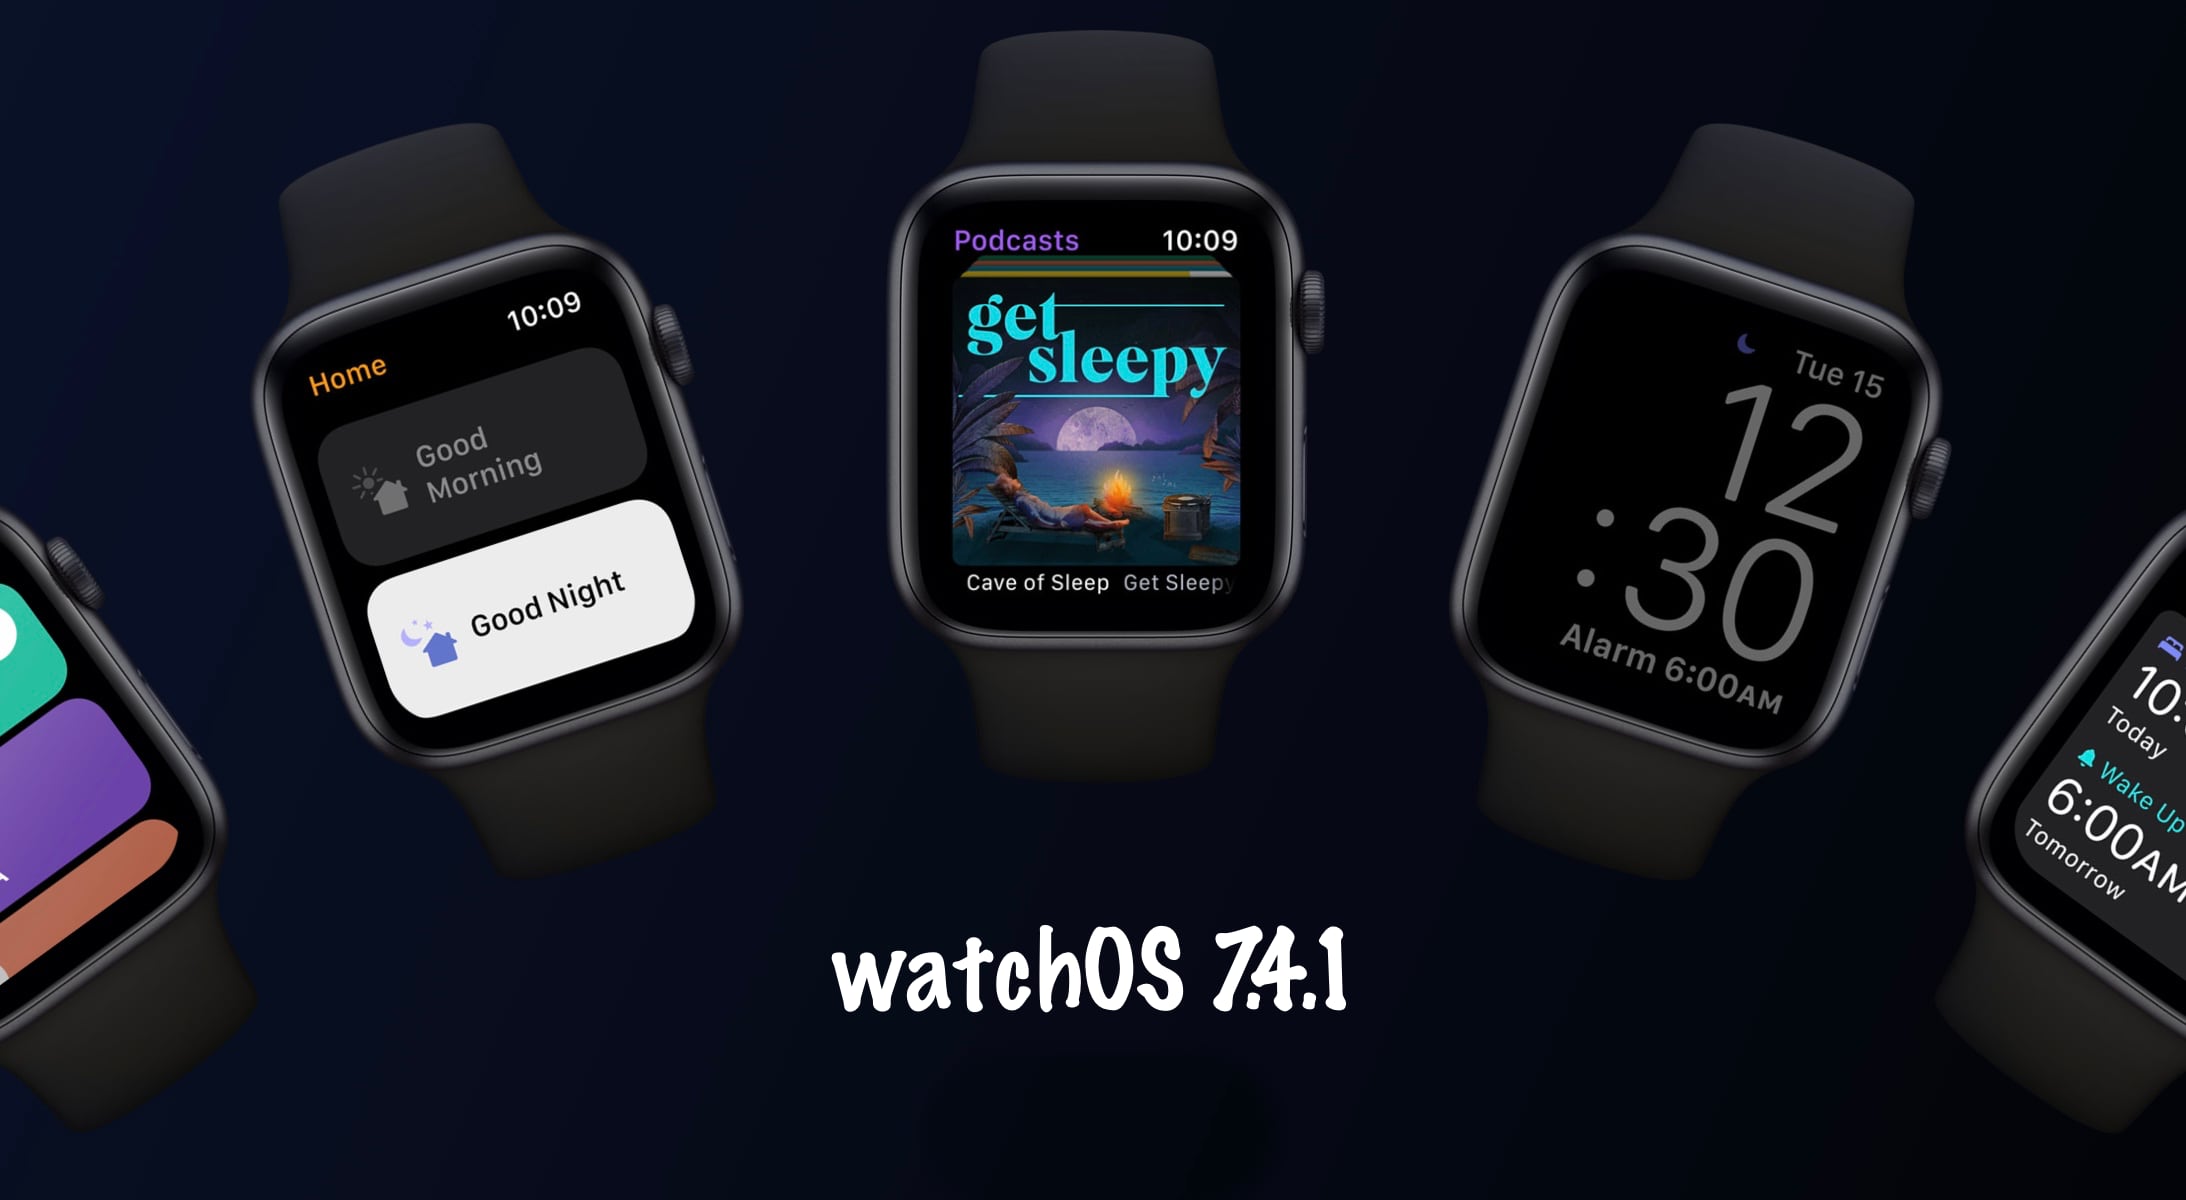 watchOS 7.4.1